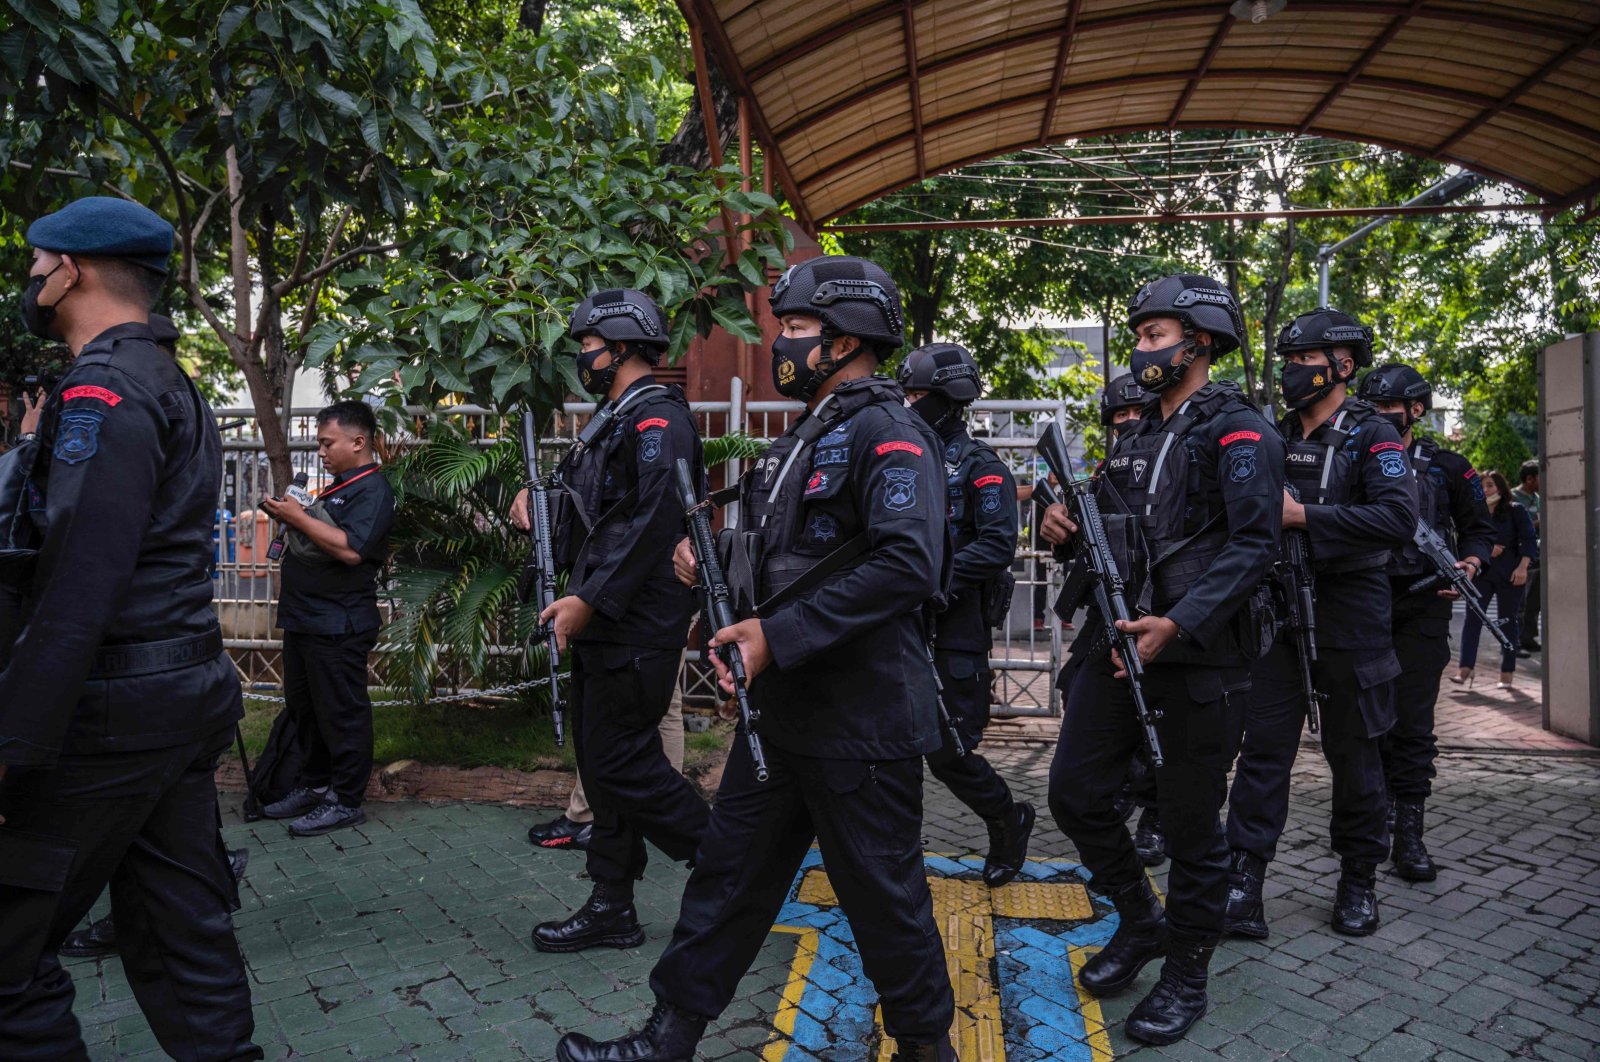 Sidang penyerbuan Indonesia dimulai karena polisi melakukan kelalaian